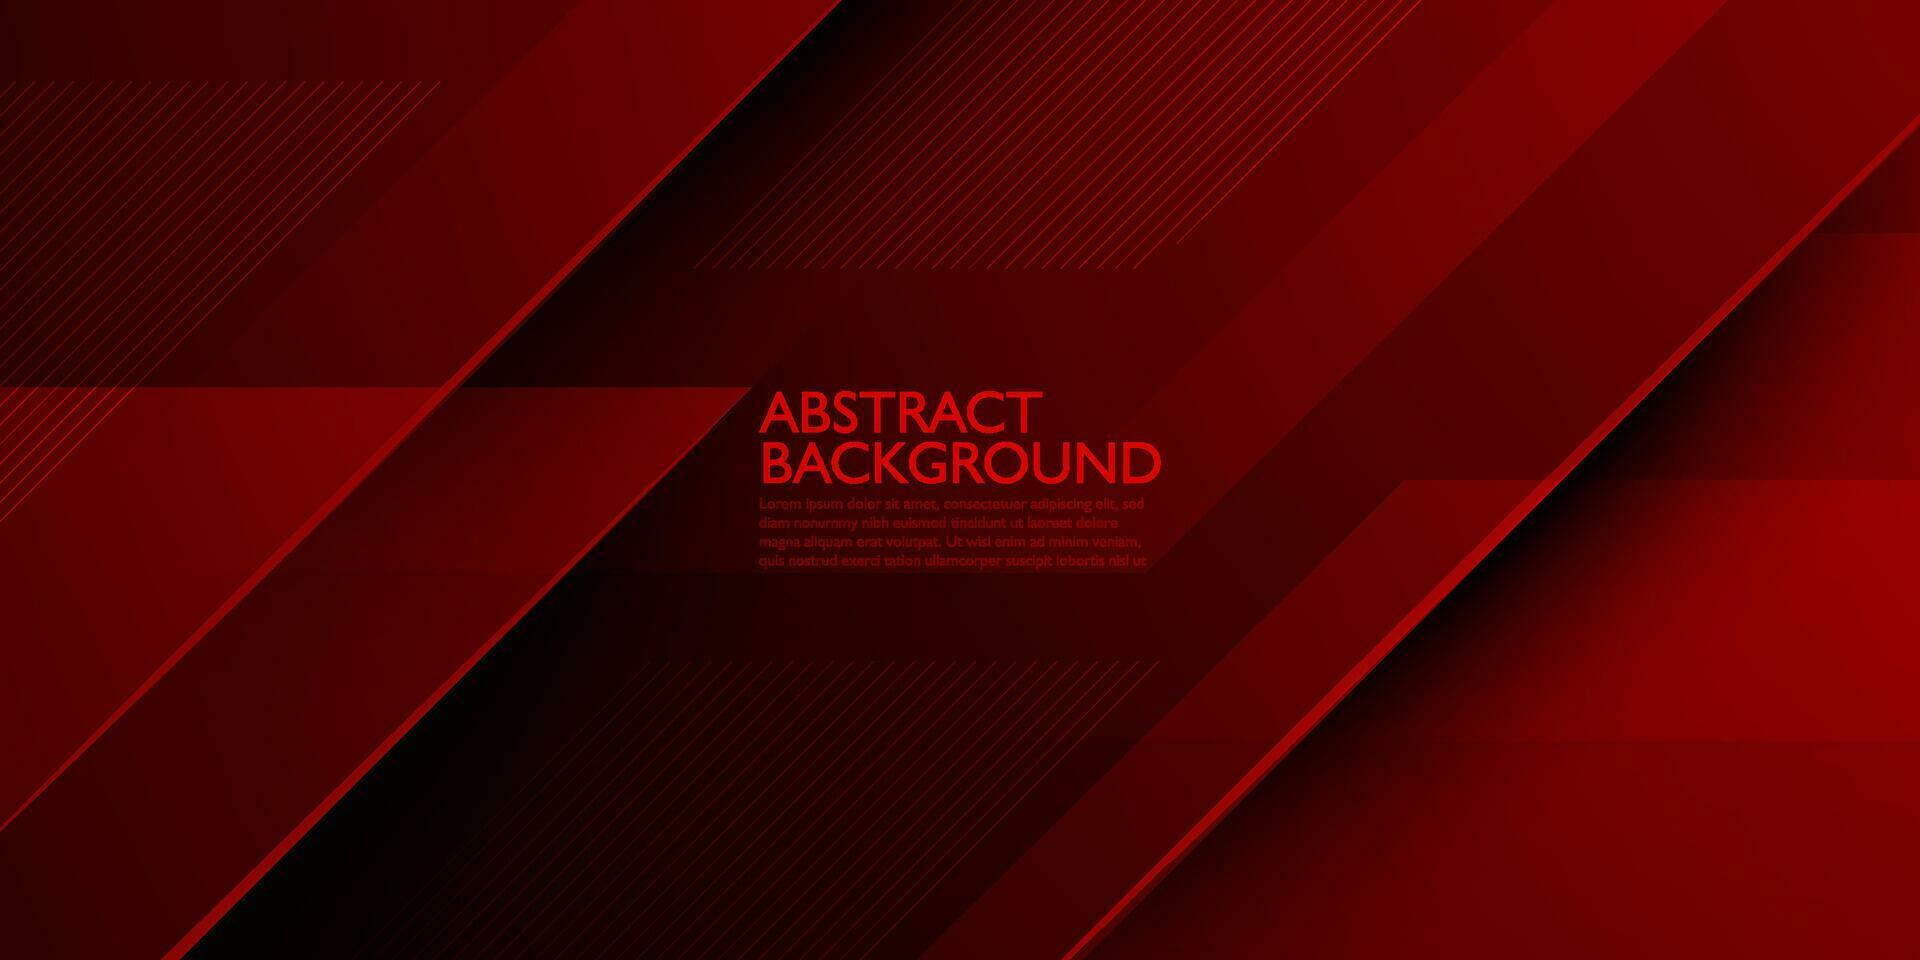 fundo de ilustração gradiente vermelho escuro abstrato moderno com aparência 3d e padrão simples. design legal e vetor de luxo.eps10